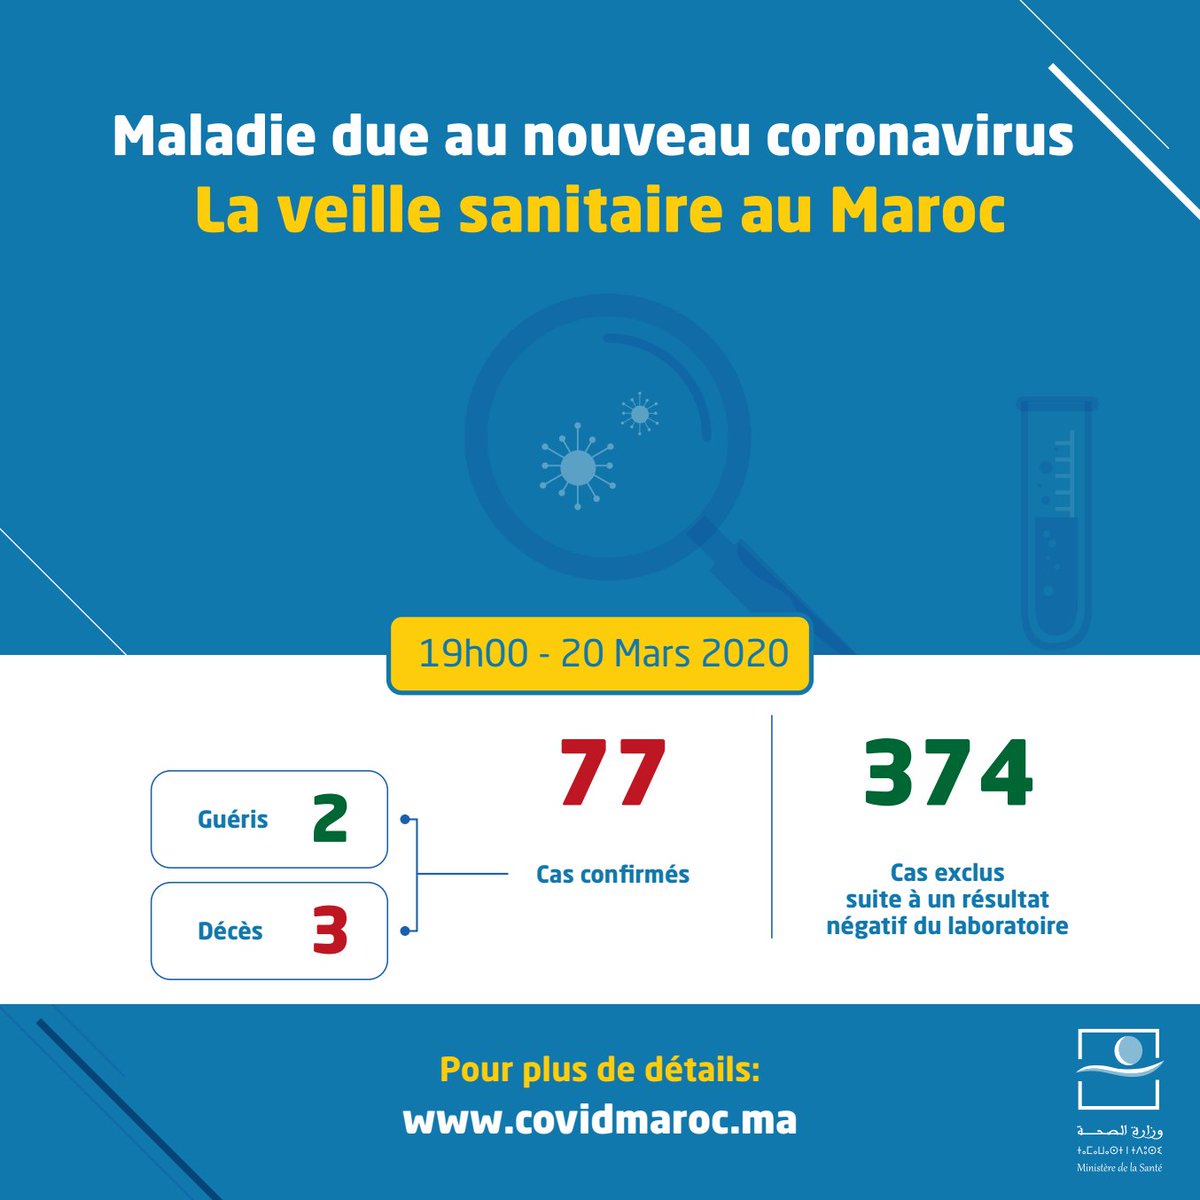 Vendredi 20 Mars 2020, 20h00: 3 nouveaux cas supplémentaires confirmés aujourd'hui au  #Maroc —en plus des 11 recensés précédemment— pour un total de 14 nouveaux cas et 77 cas d'infection confirmés. #Covid_19  #coronavirus